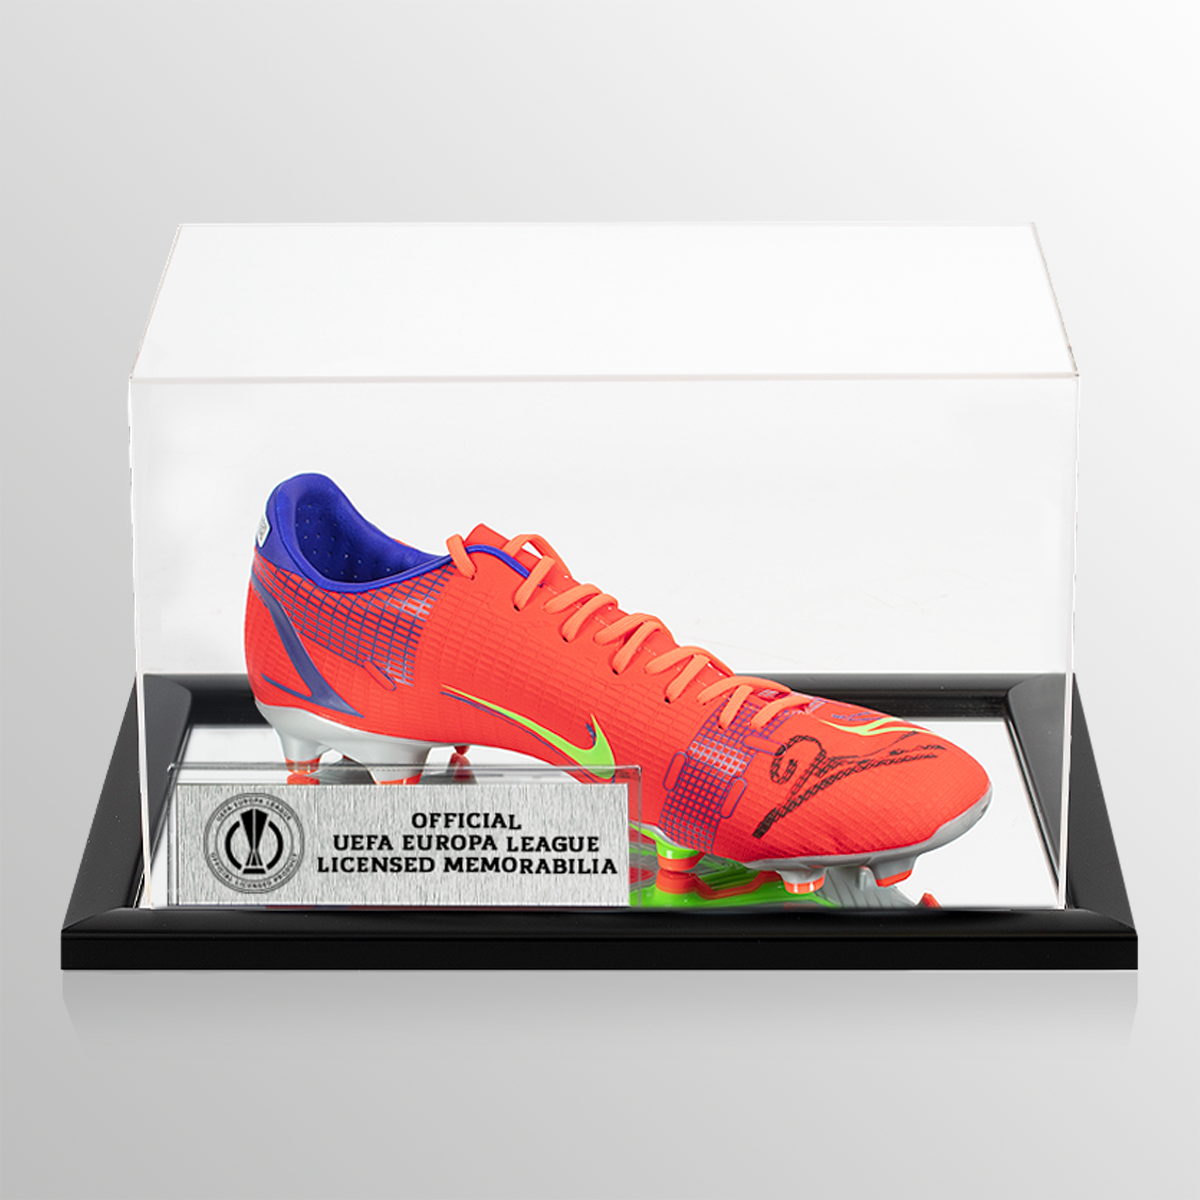 Scarpa Nike Mercurial rossa ufficiale della UEFA Europa League autografata da Robert Lewandowski in custodia acrilica